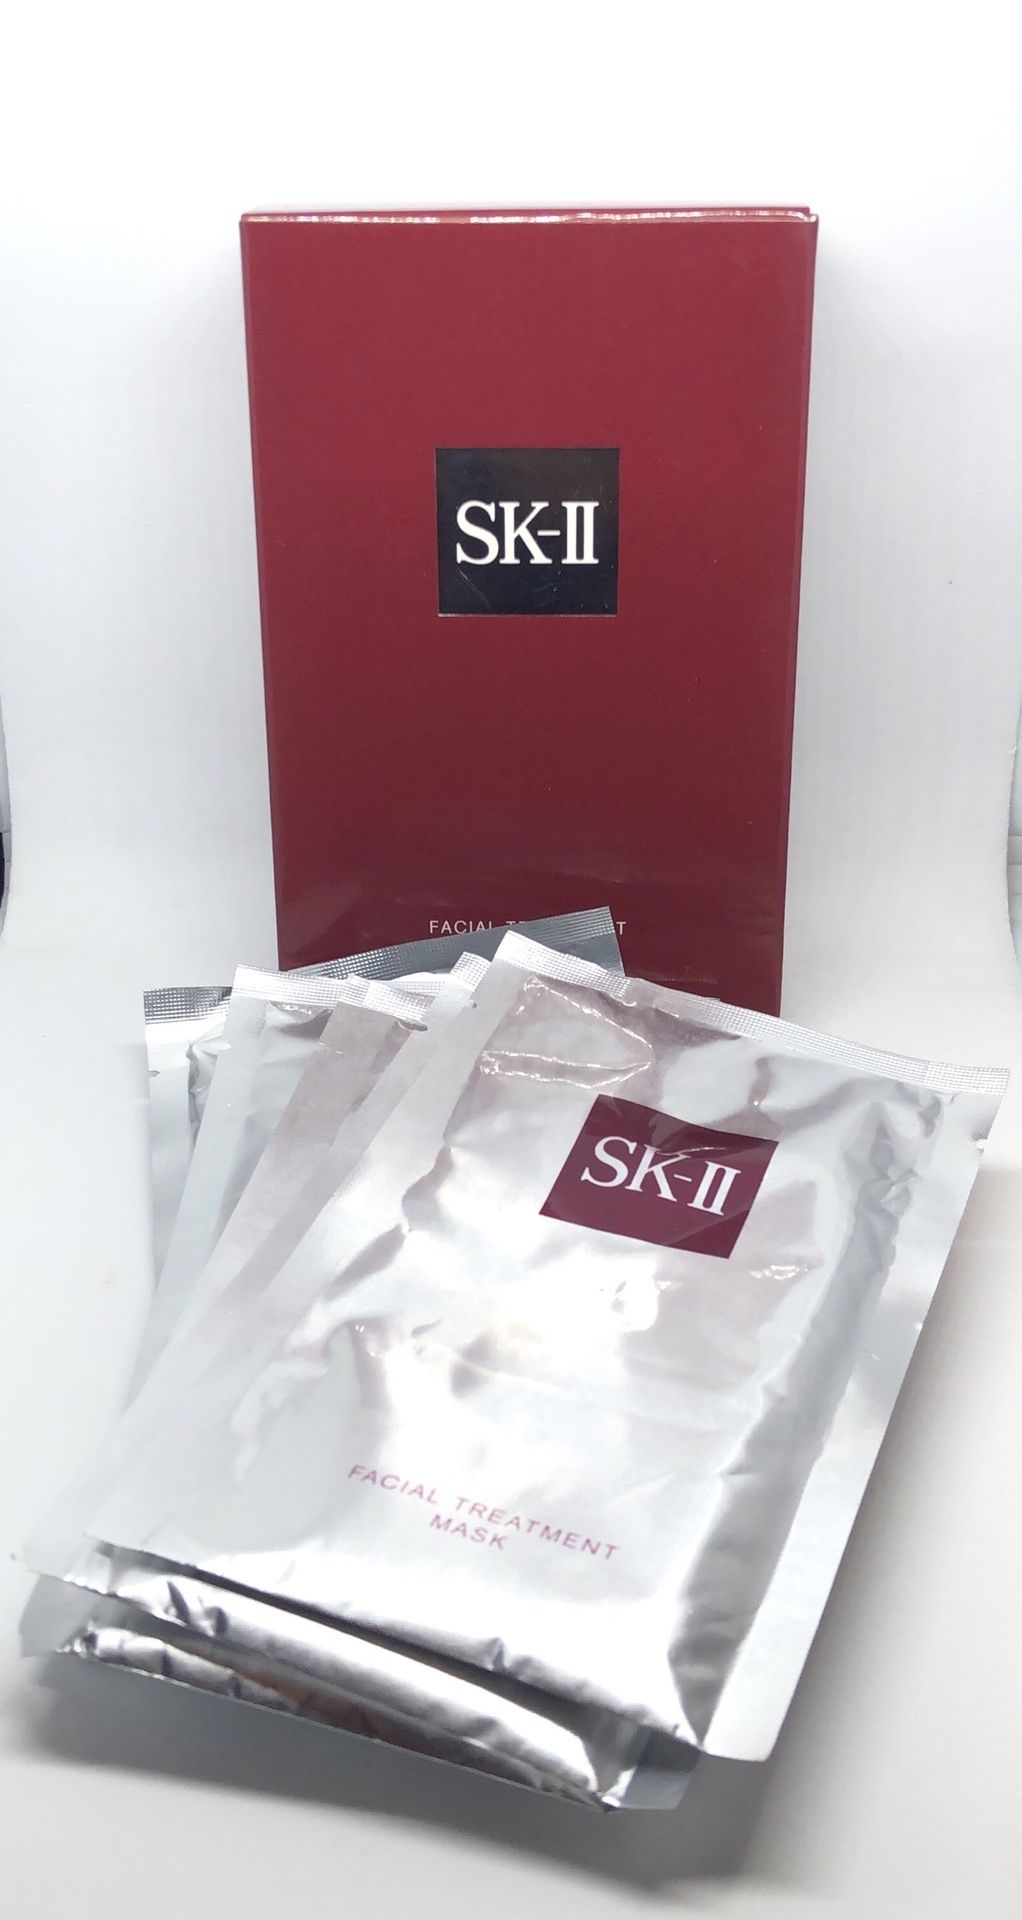 SK-II Facial Treatment Mask 6pcs pack